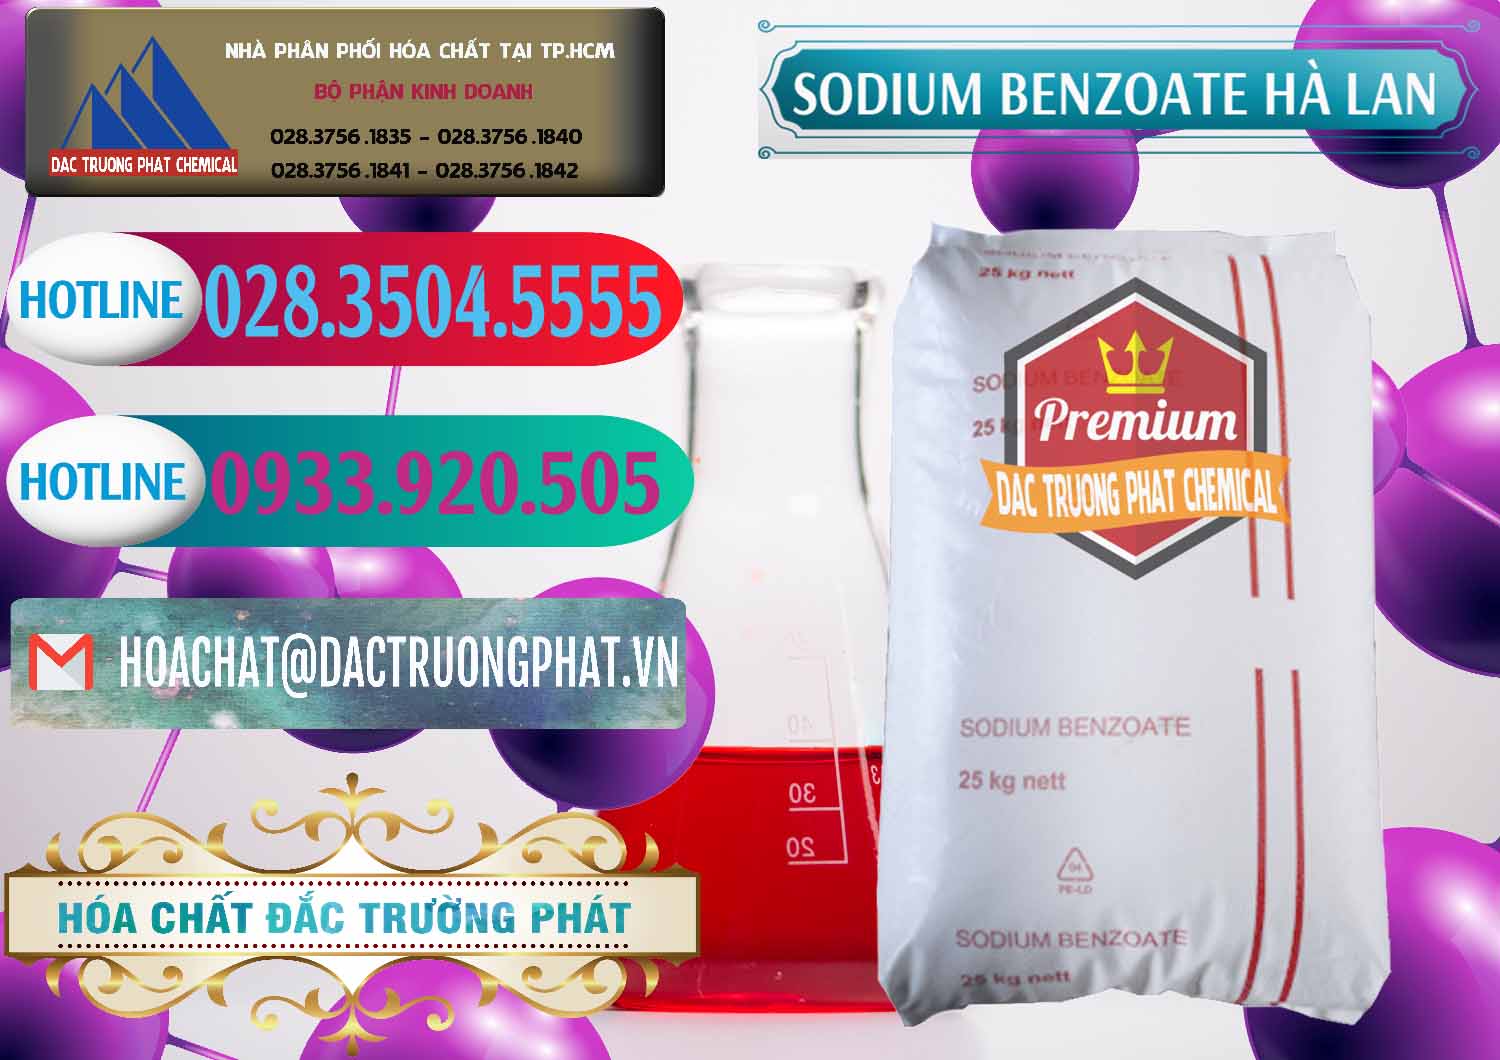 Cty chuyên cung ứng - bán Sodium Benzoate - Mốc Bột Chữ Cam Hà Lan Netherlands - 0360 - Nhà phân phối _ cung cấp hóa chất tại TP.HCM - truongphat.vn